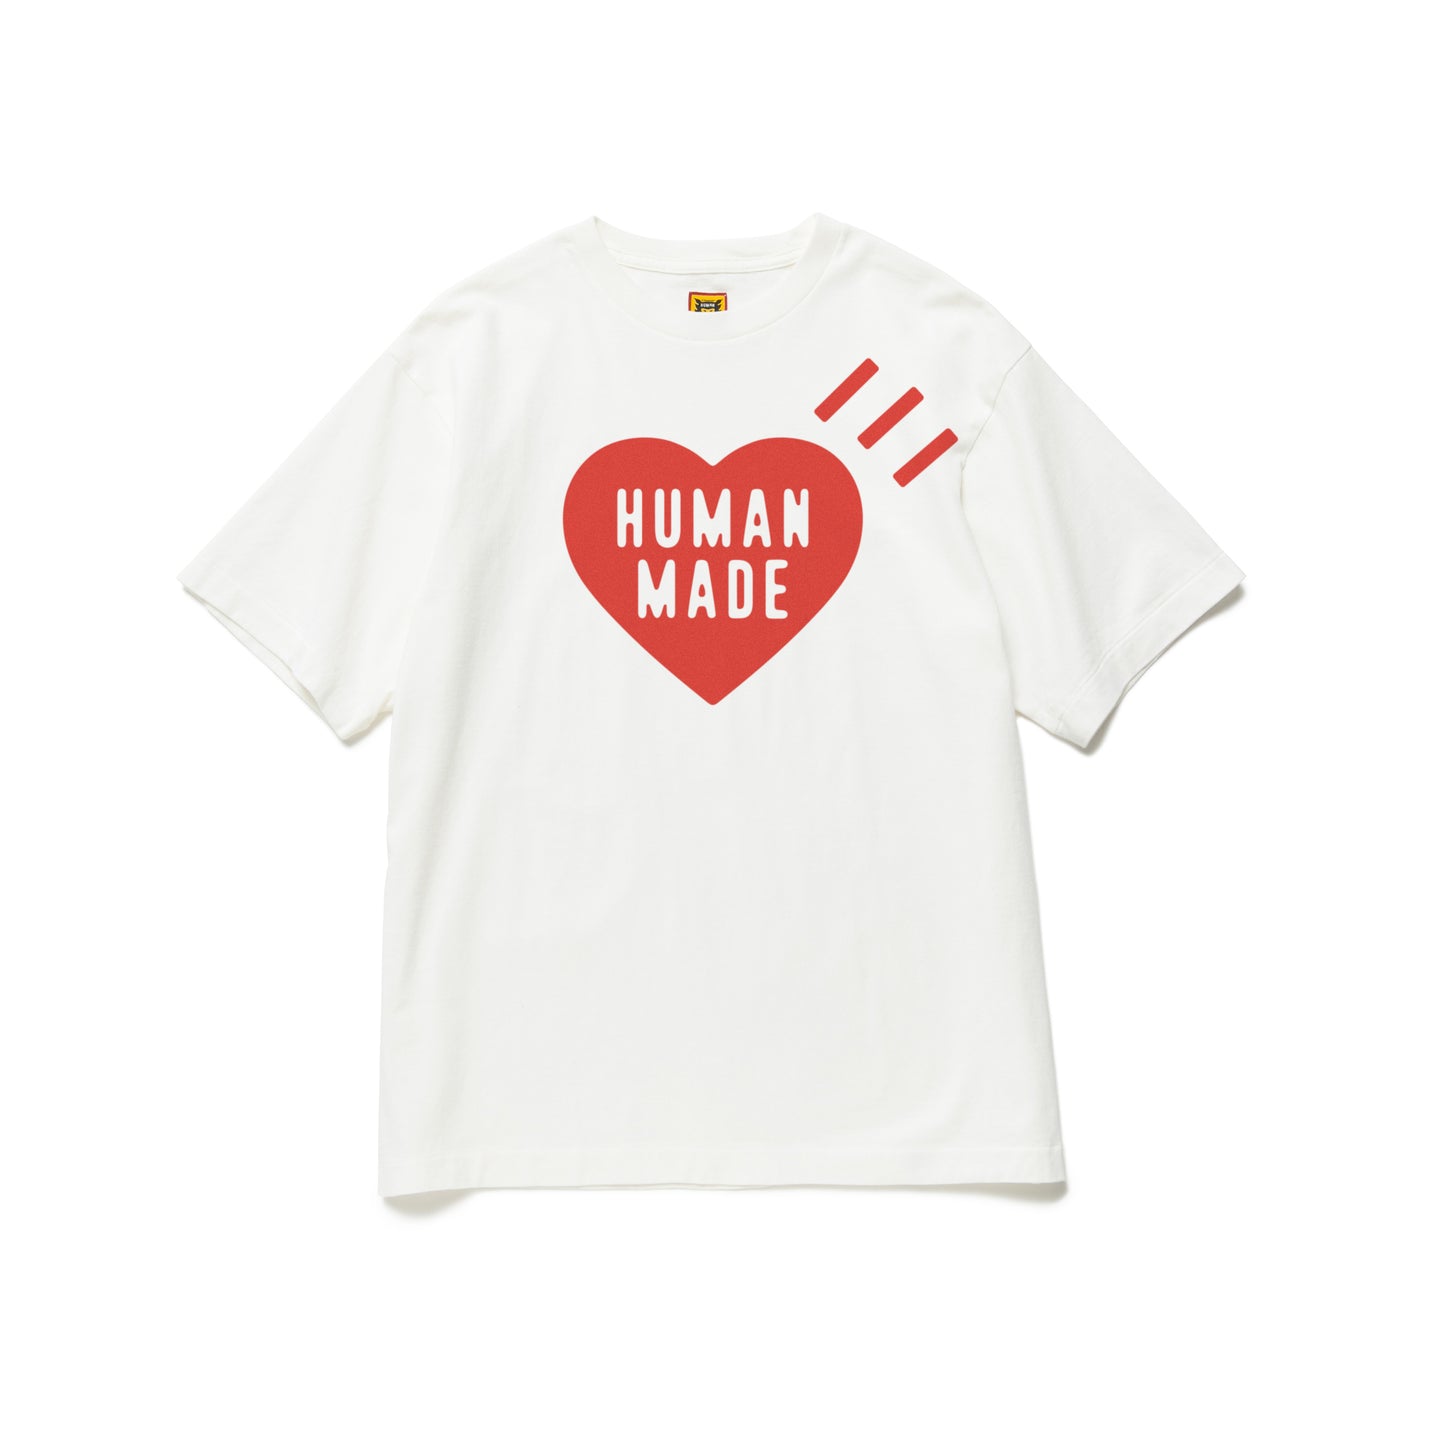 6,348円【Lサイズ】HUMAN MADE s/s shirts